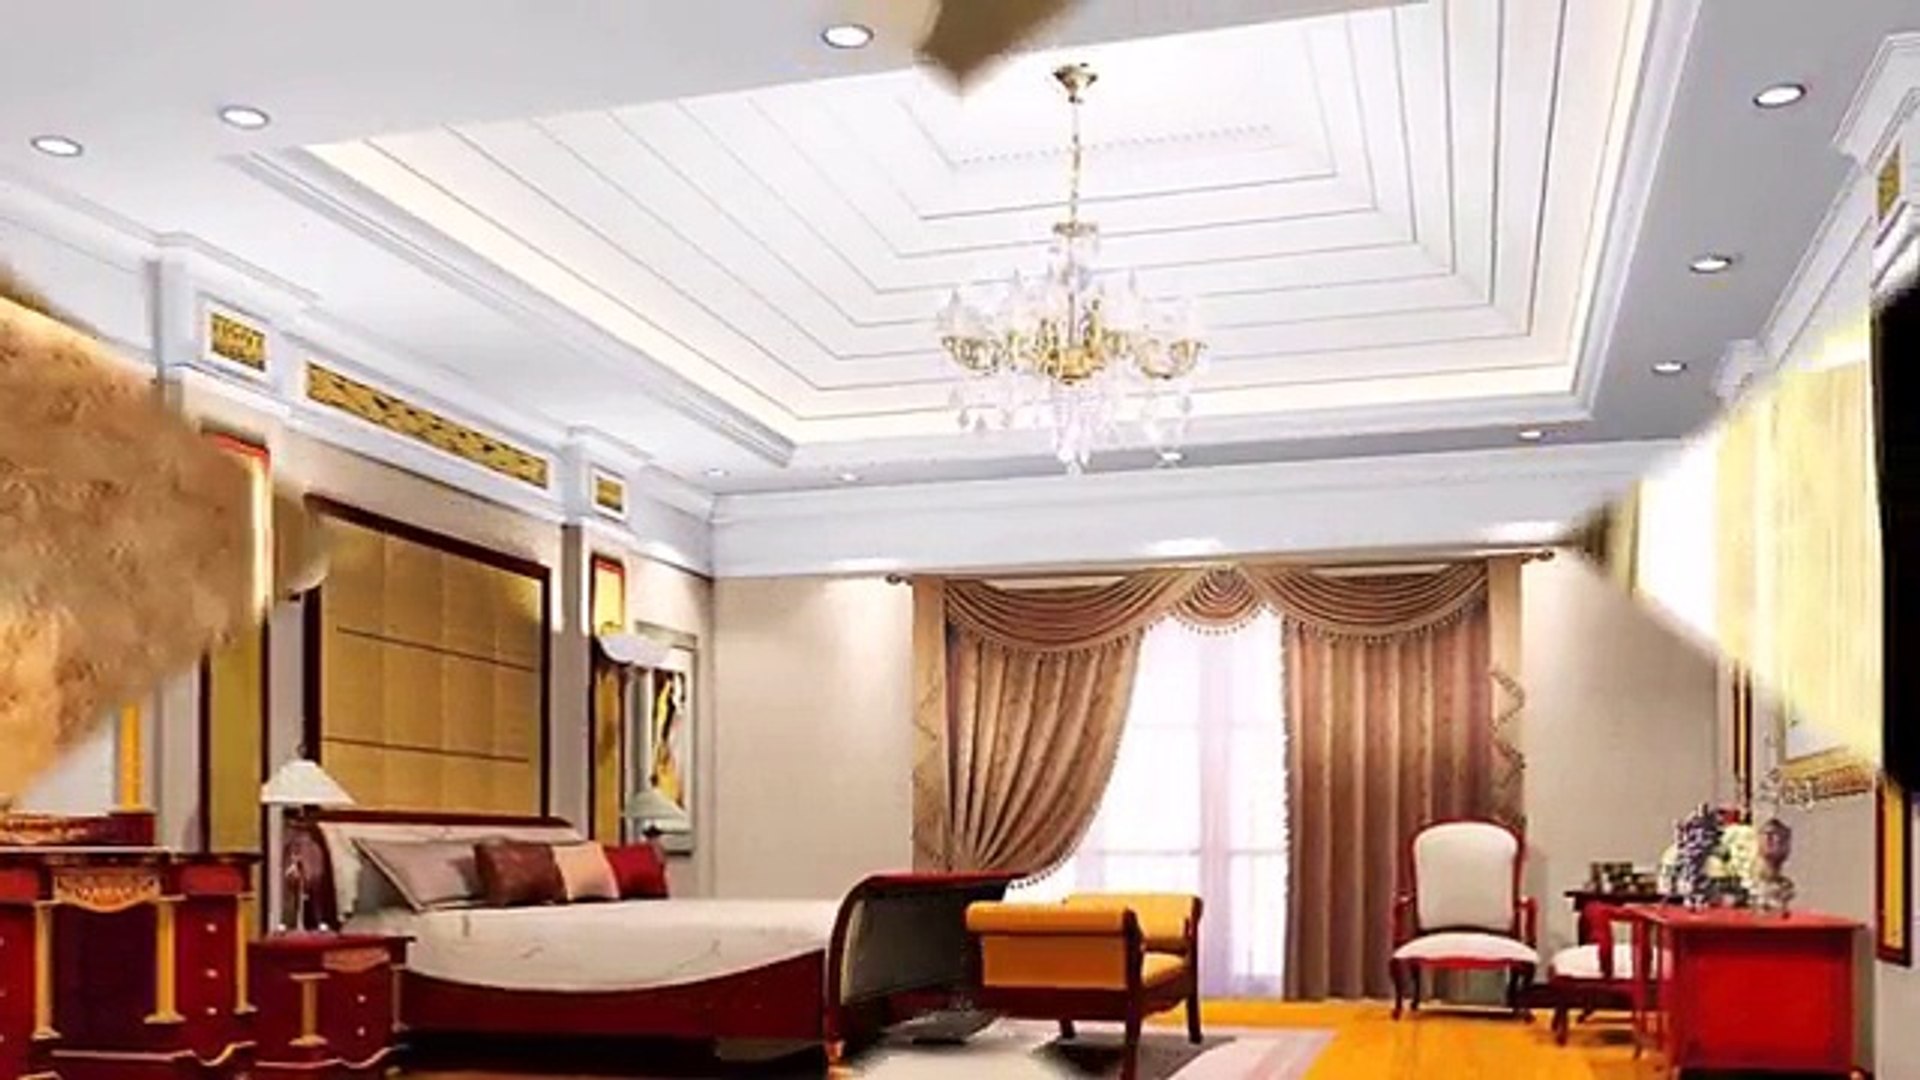 Best False Ceiling Design For Kitchen Bedroom Living Room Video